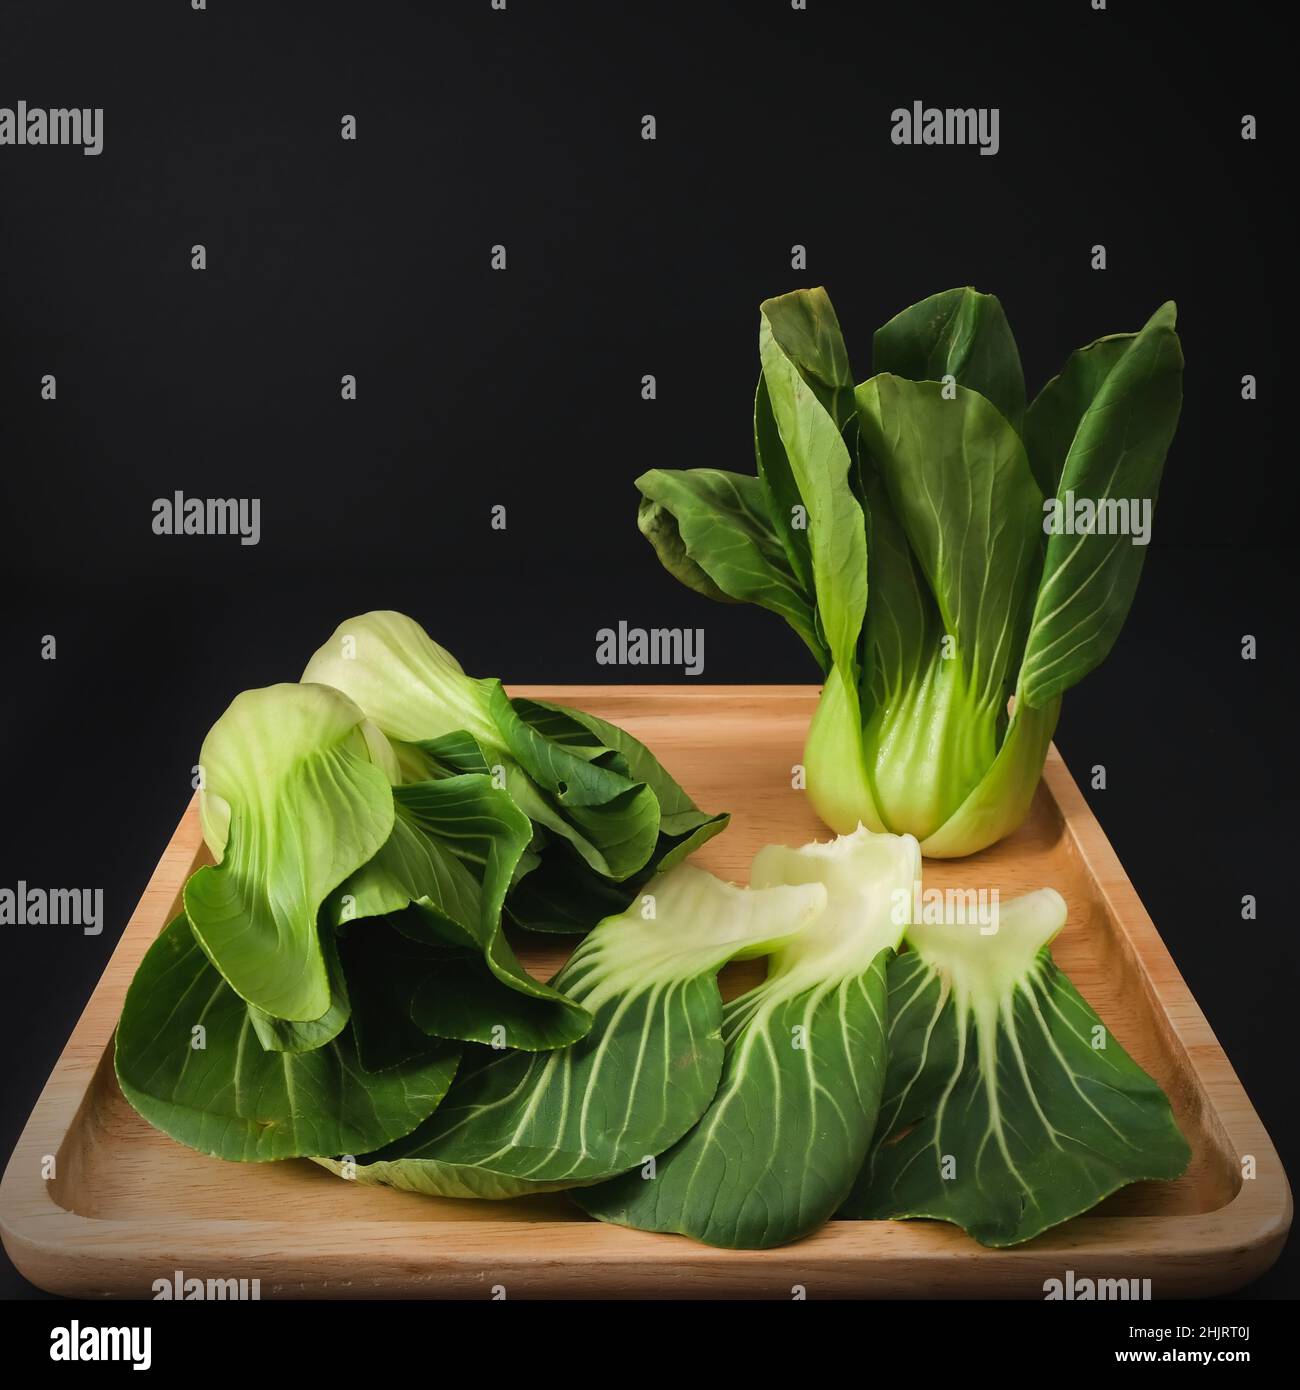 Vert biologique Baby Bok Choy ou Brassica rapa chinensis sur plaque en bois sur fond noir.Légumes chinois populaires Banque D'Images